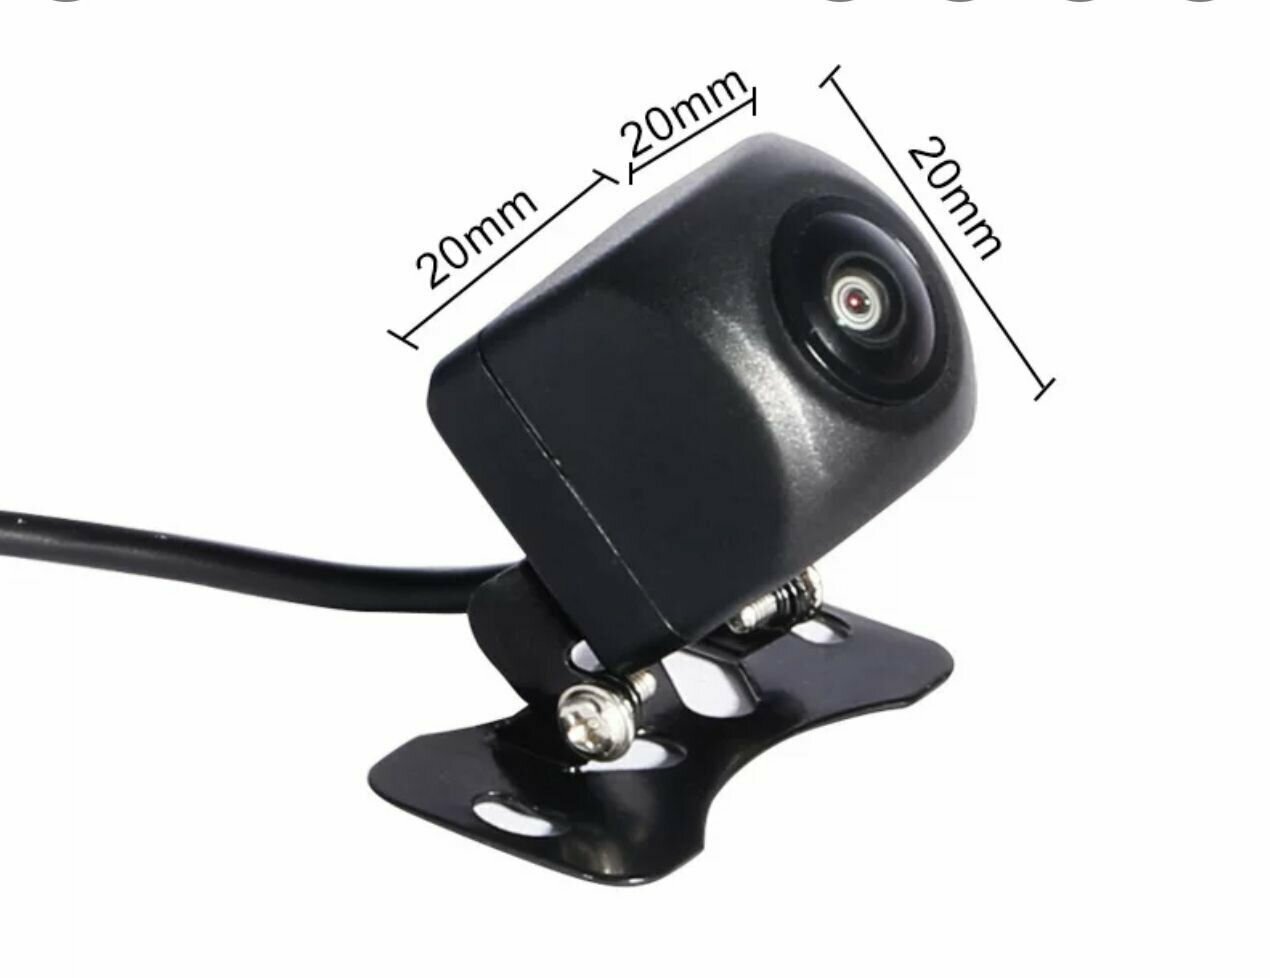 Камера заднего вида в машину / Автомобильная парковочная камера Full HD "рыбий глаз" Blackview AHD-03 для головных устройств на базе Андройд и мониторов с парковочными линиями (Тыл-Фронт, FHD/AHD))